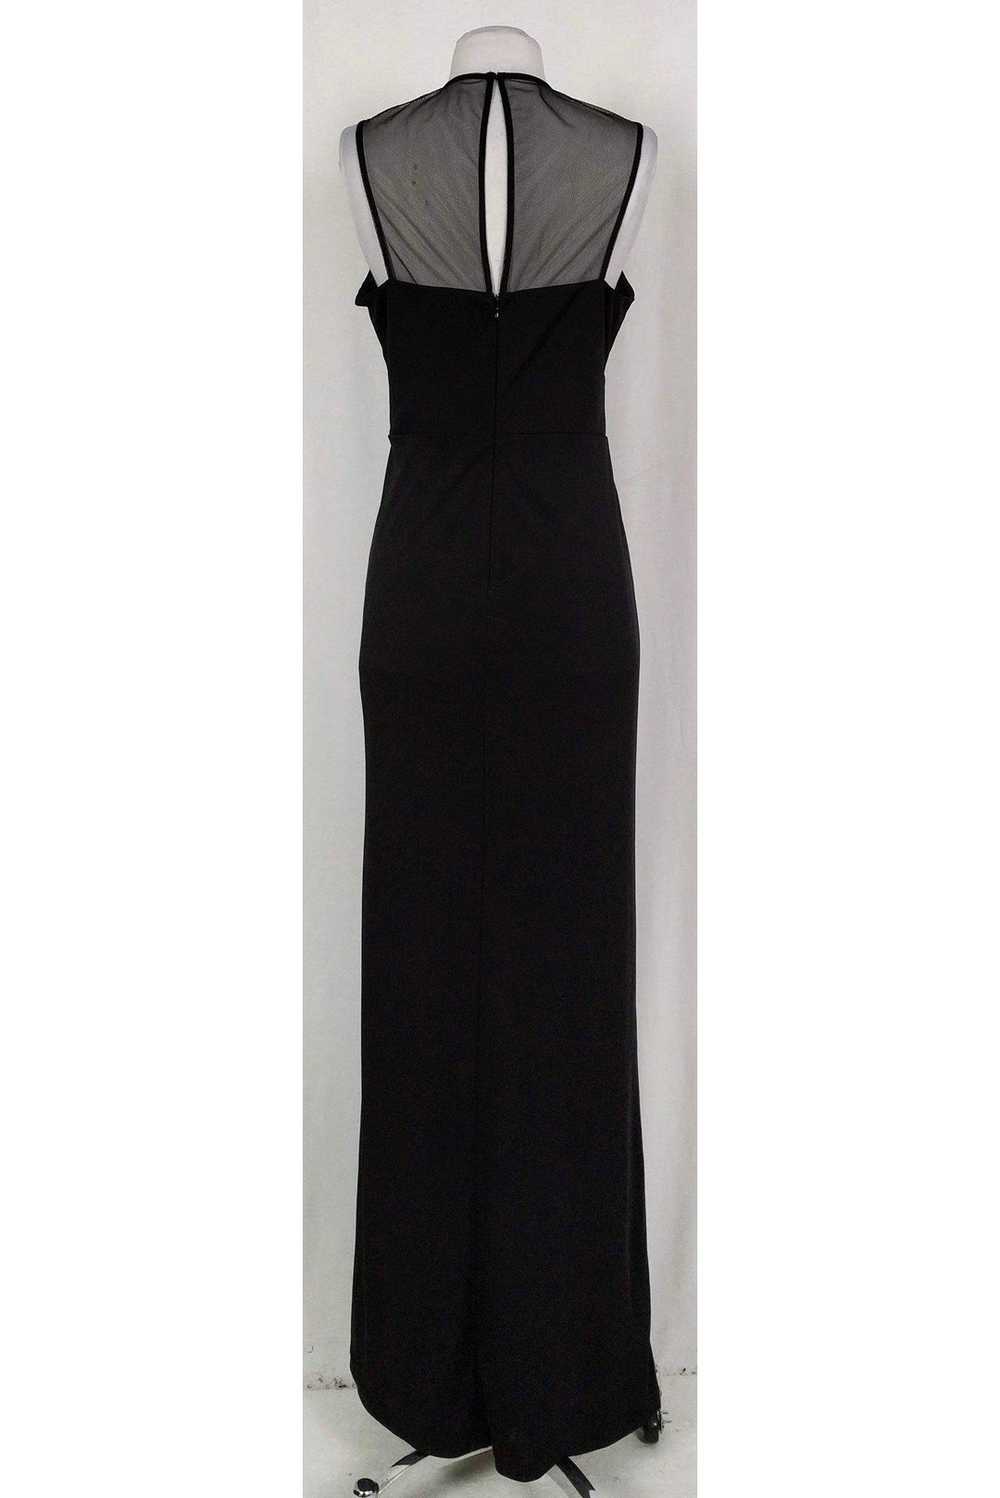 Parker Black - Black Draped Gown Sz 6 - image 3